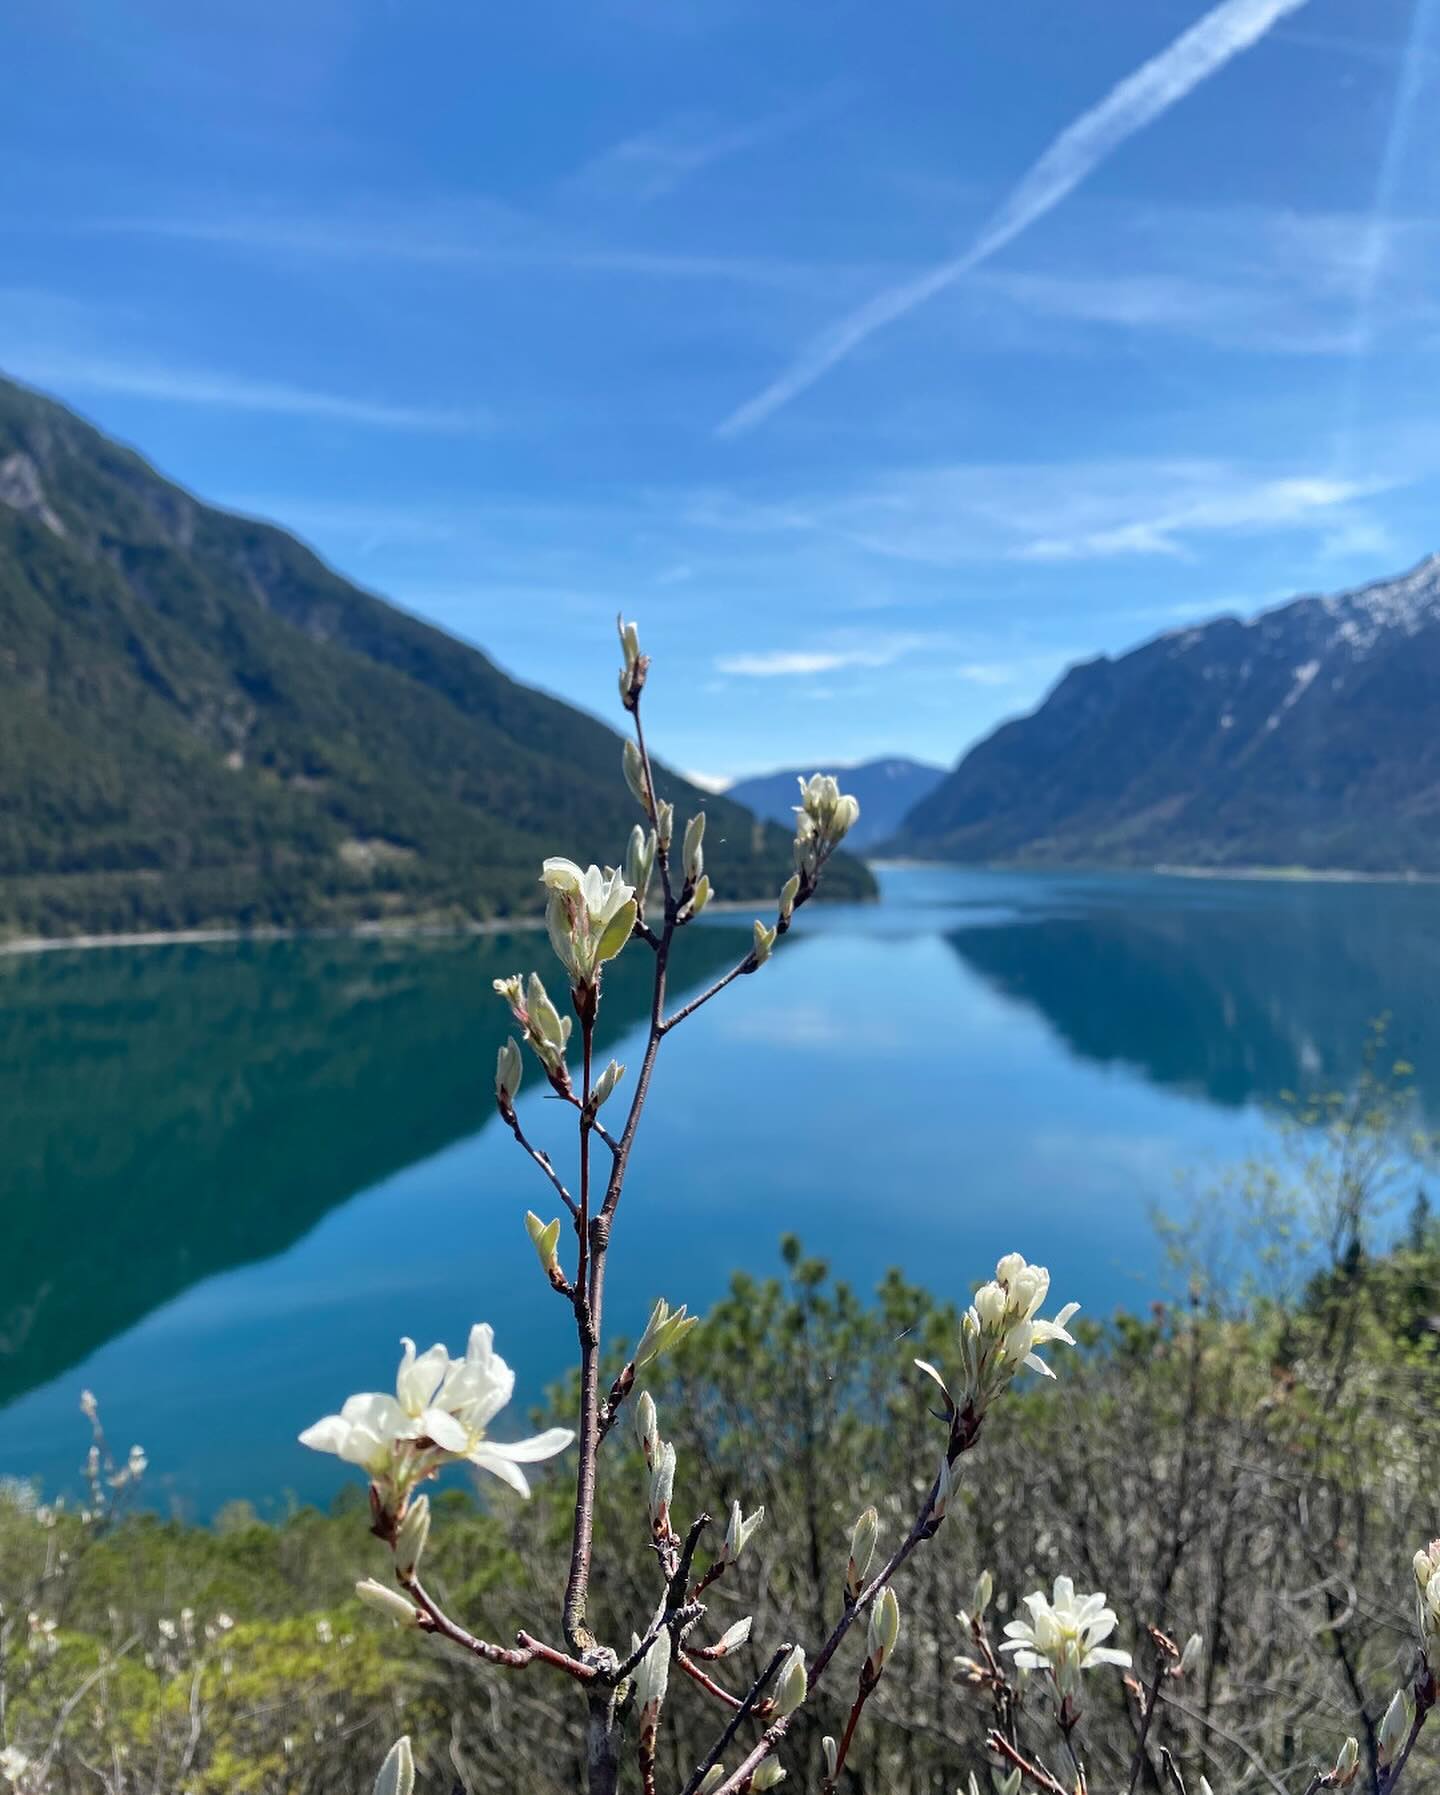 Frühlingsgefühle am Achensee! 😍🌼🌸

Genieße die atemberaubende Schönheit der Natur an einem der schönsten Orte Österreichs. 🏞️

#achensee #visittirol #frühling #wandern #alpenperlenamachensee